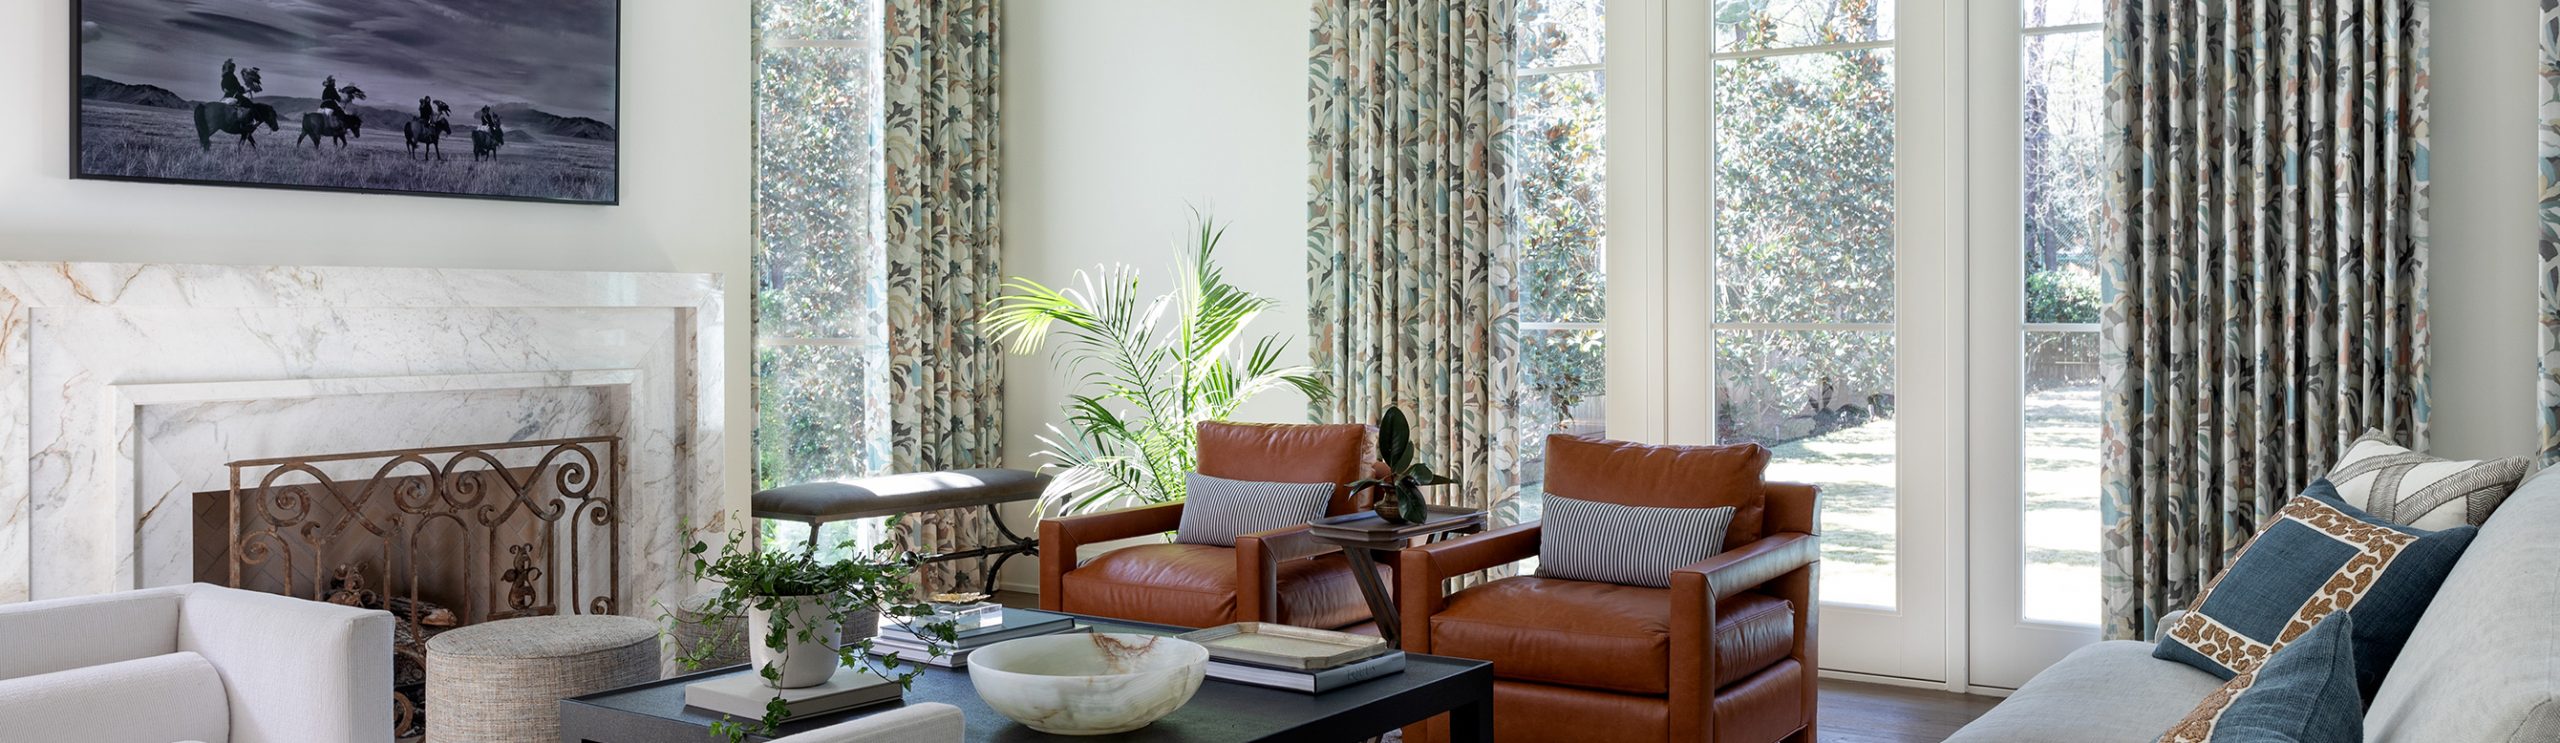 Elizabeth Garrett Luxury Living Room Interior Design